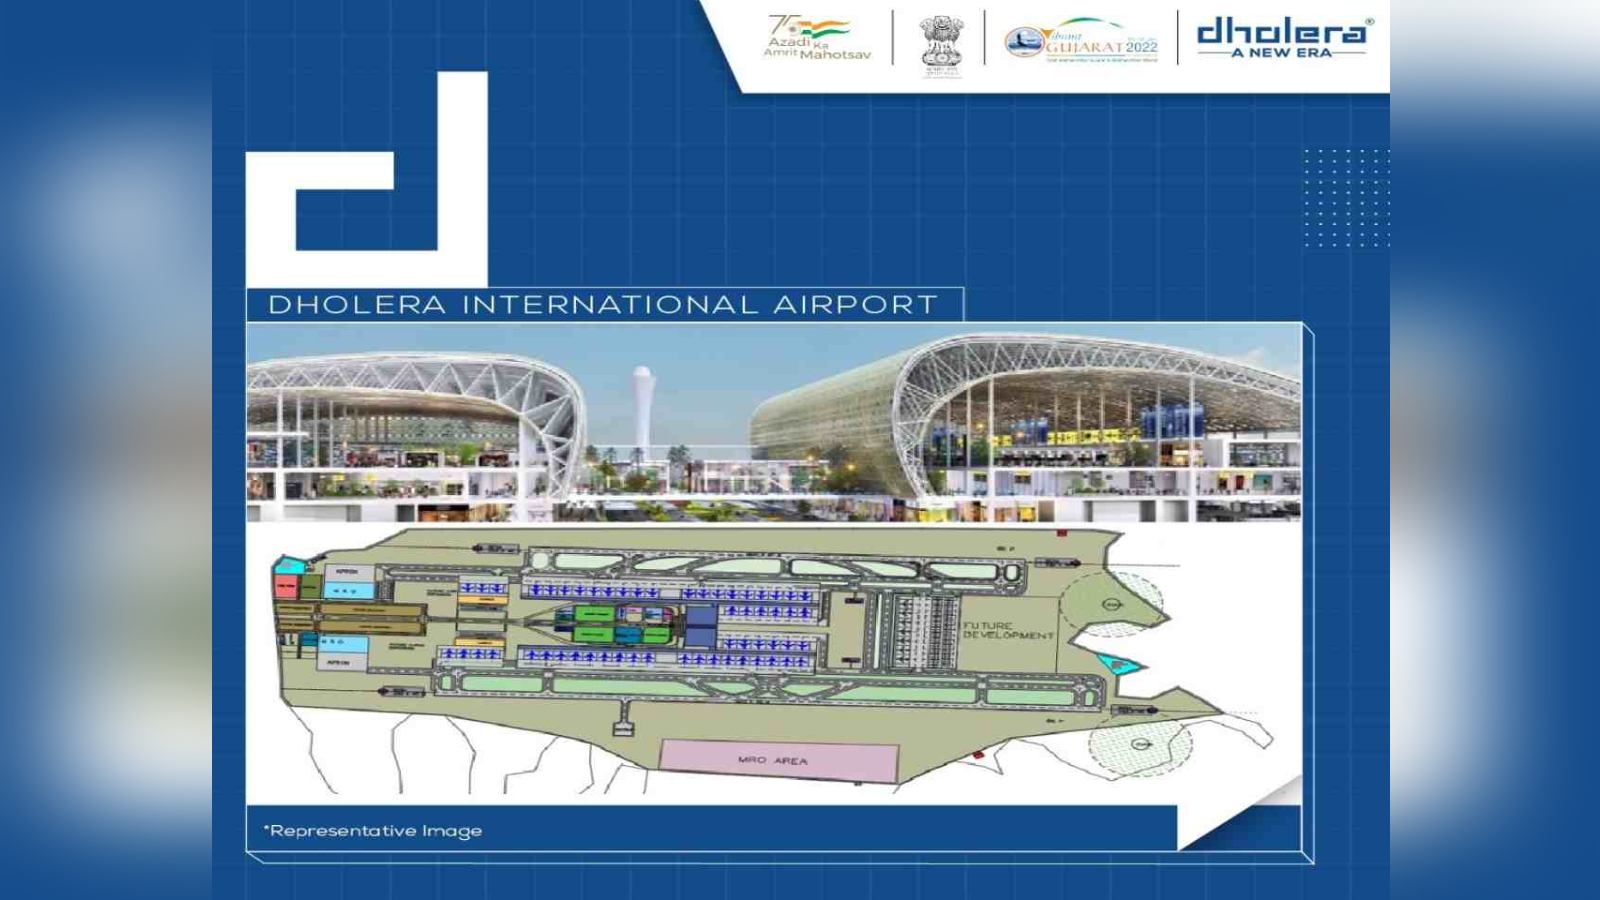 Dholera International Airport: Inauguration and passenger amenities